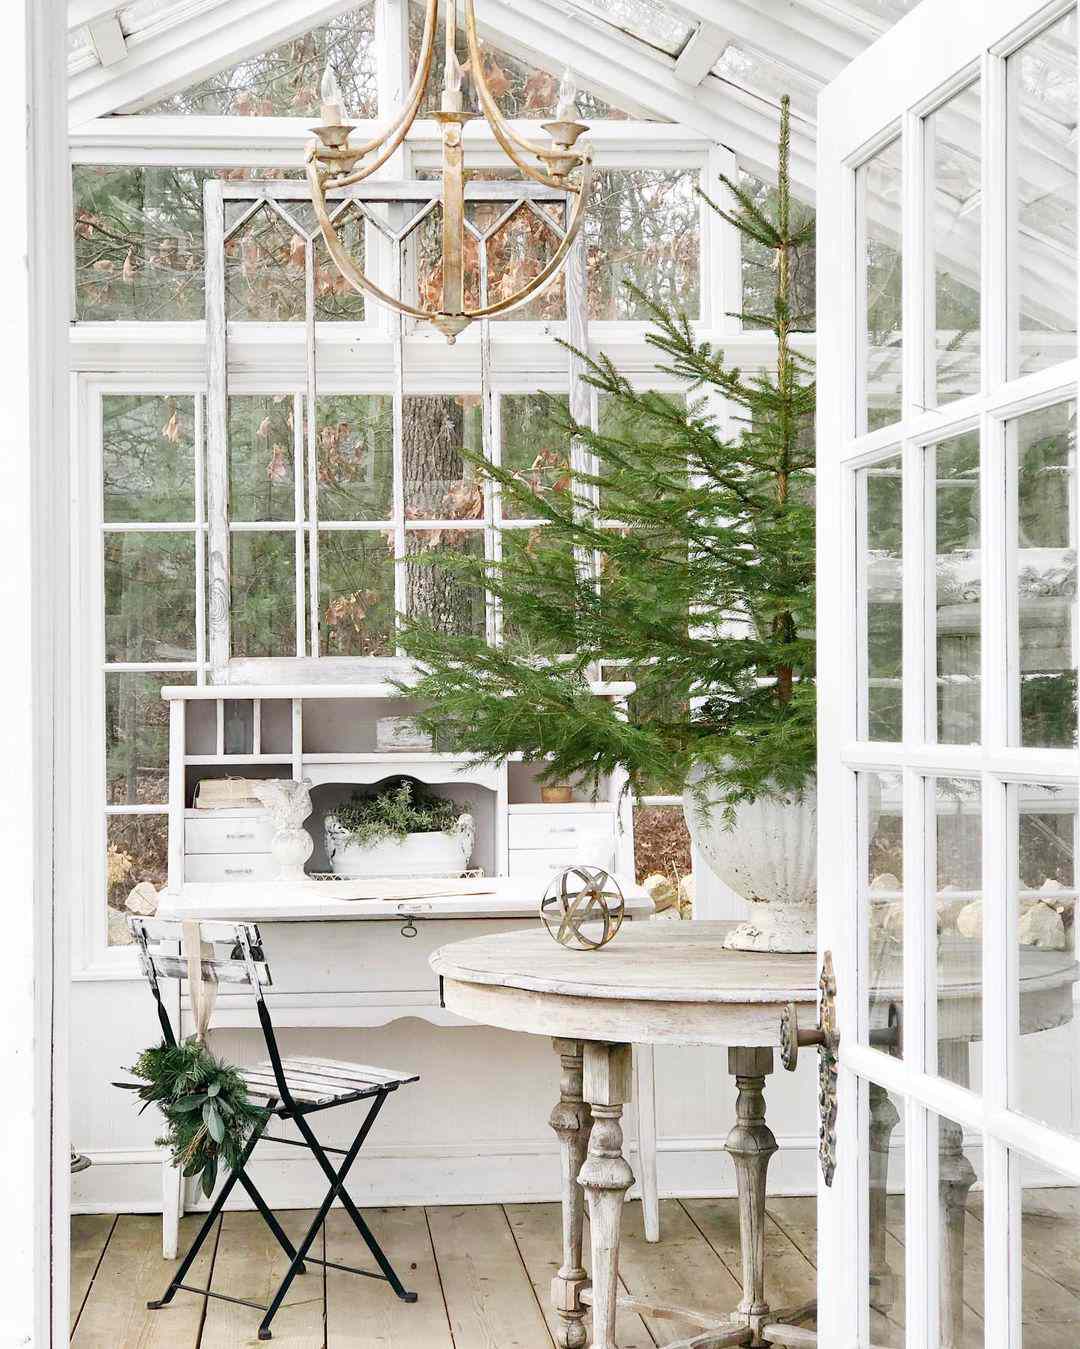 Invernadero blanco cerrado por ventana con mesa y silla antiguas con árbol de hoja perenne en maceta